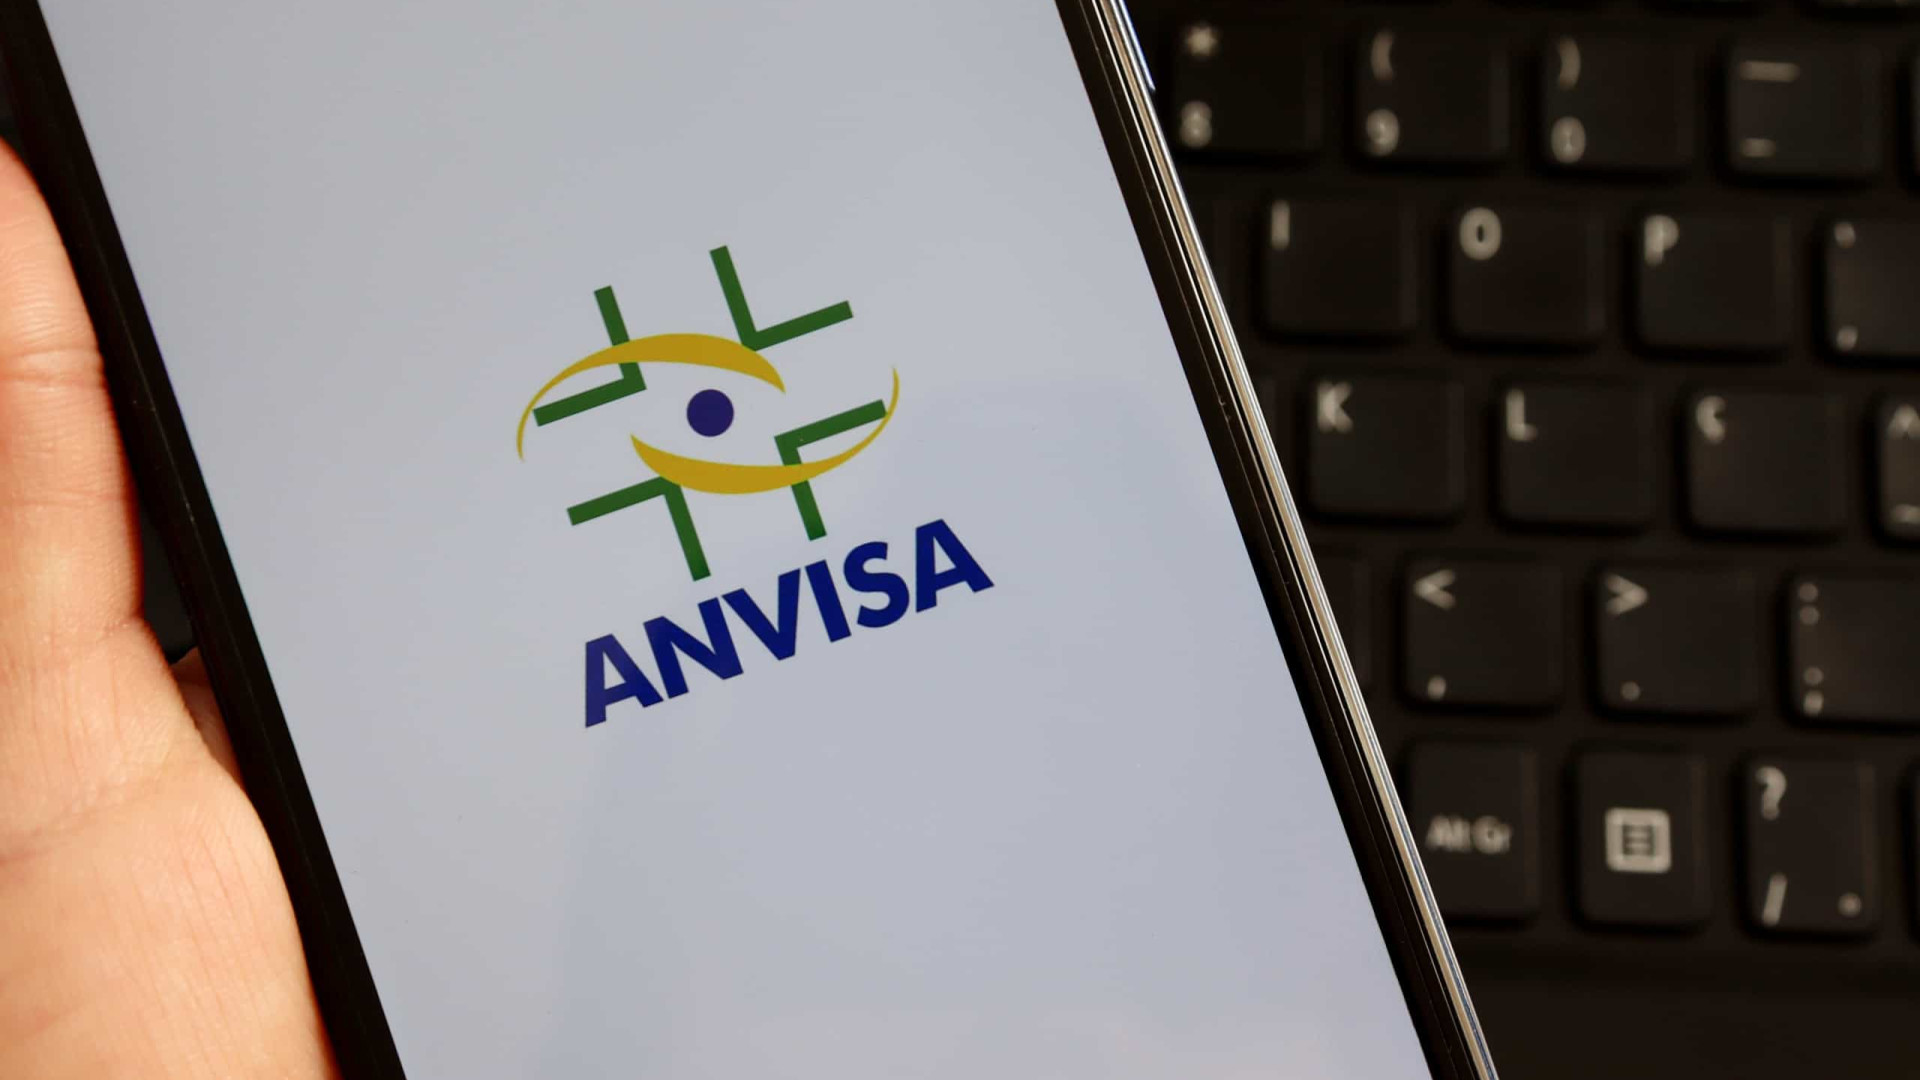 Diretores e técnicos da Anvisa receberam cerca de 150 emails com ameaças; veja